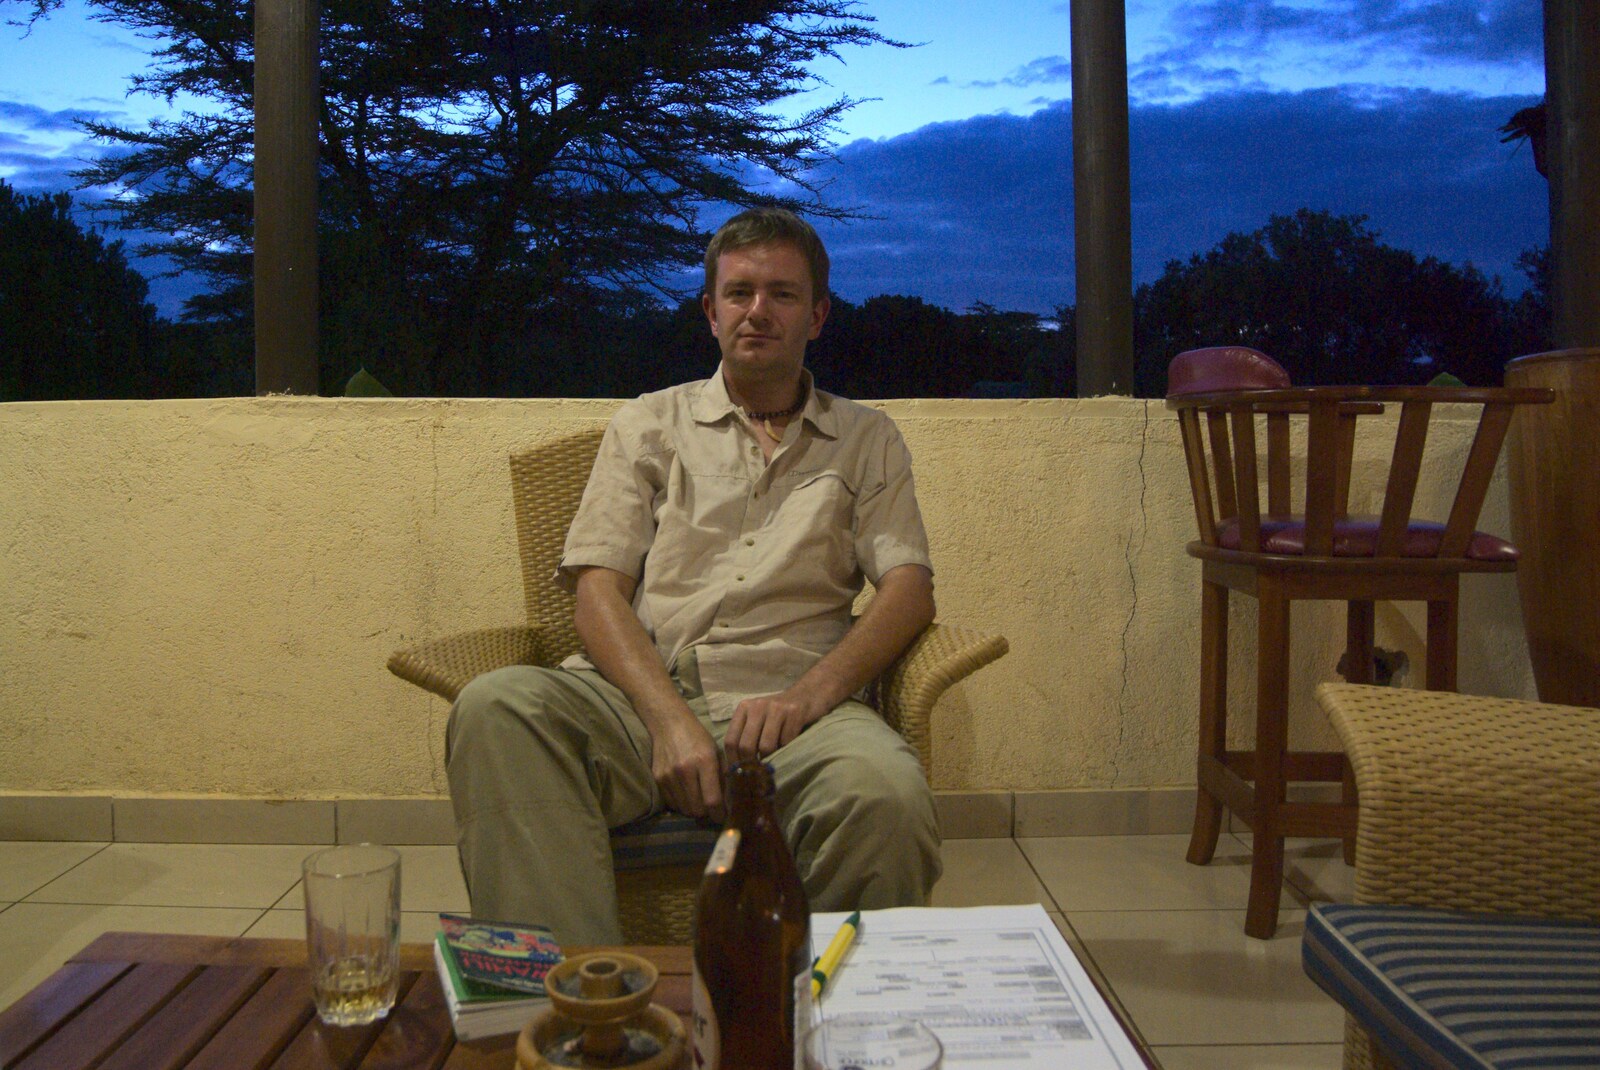 Maasai Mara Safari and a Maasai Village, Ololaimutia, Kenya - 5th November 2010: Nosher considers the day